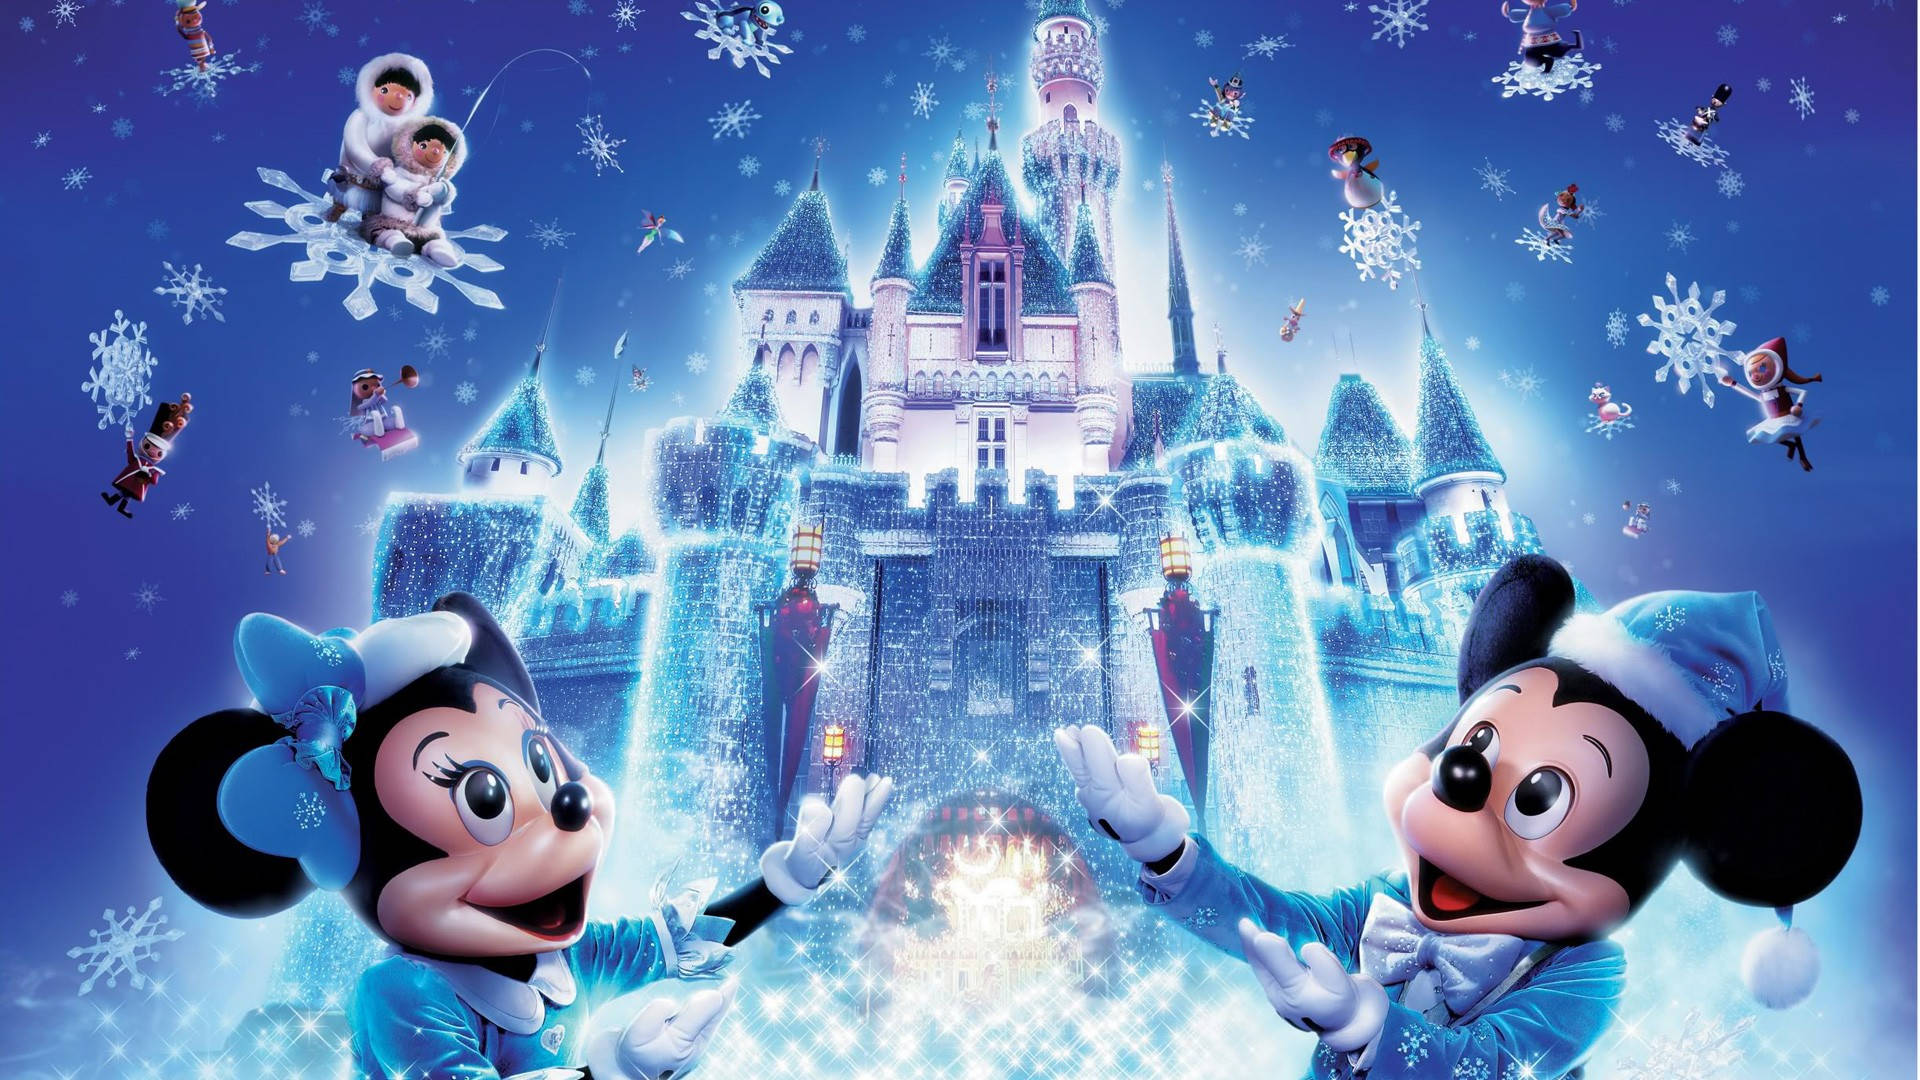 Disney Characters In Frozen Castle